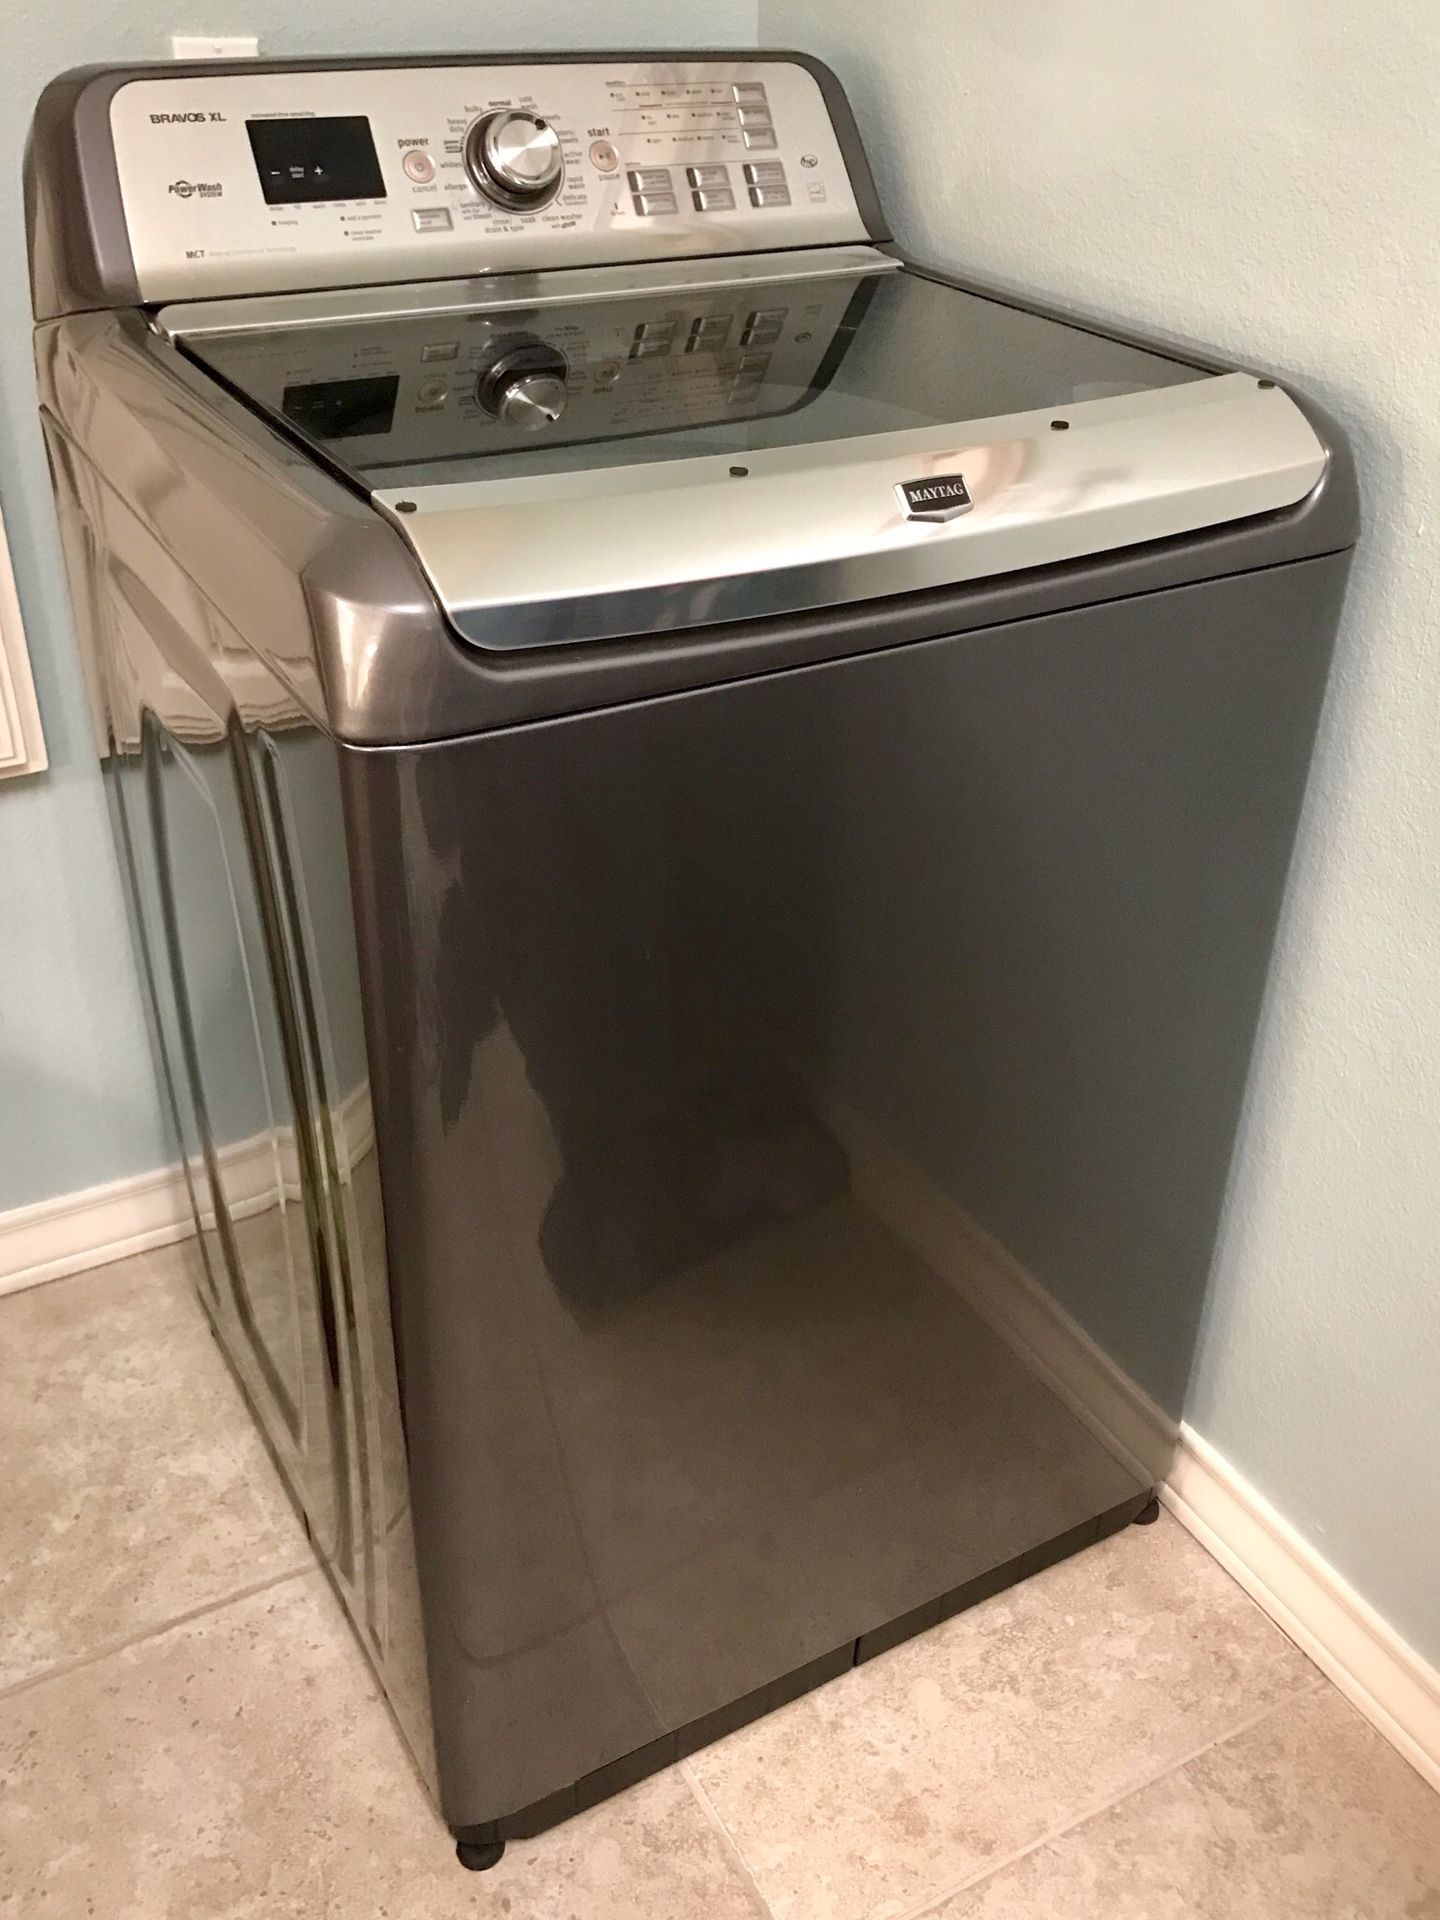 Maytag Washer Bravos XL Washing Machine Needs A Little Work